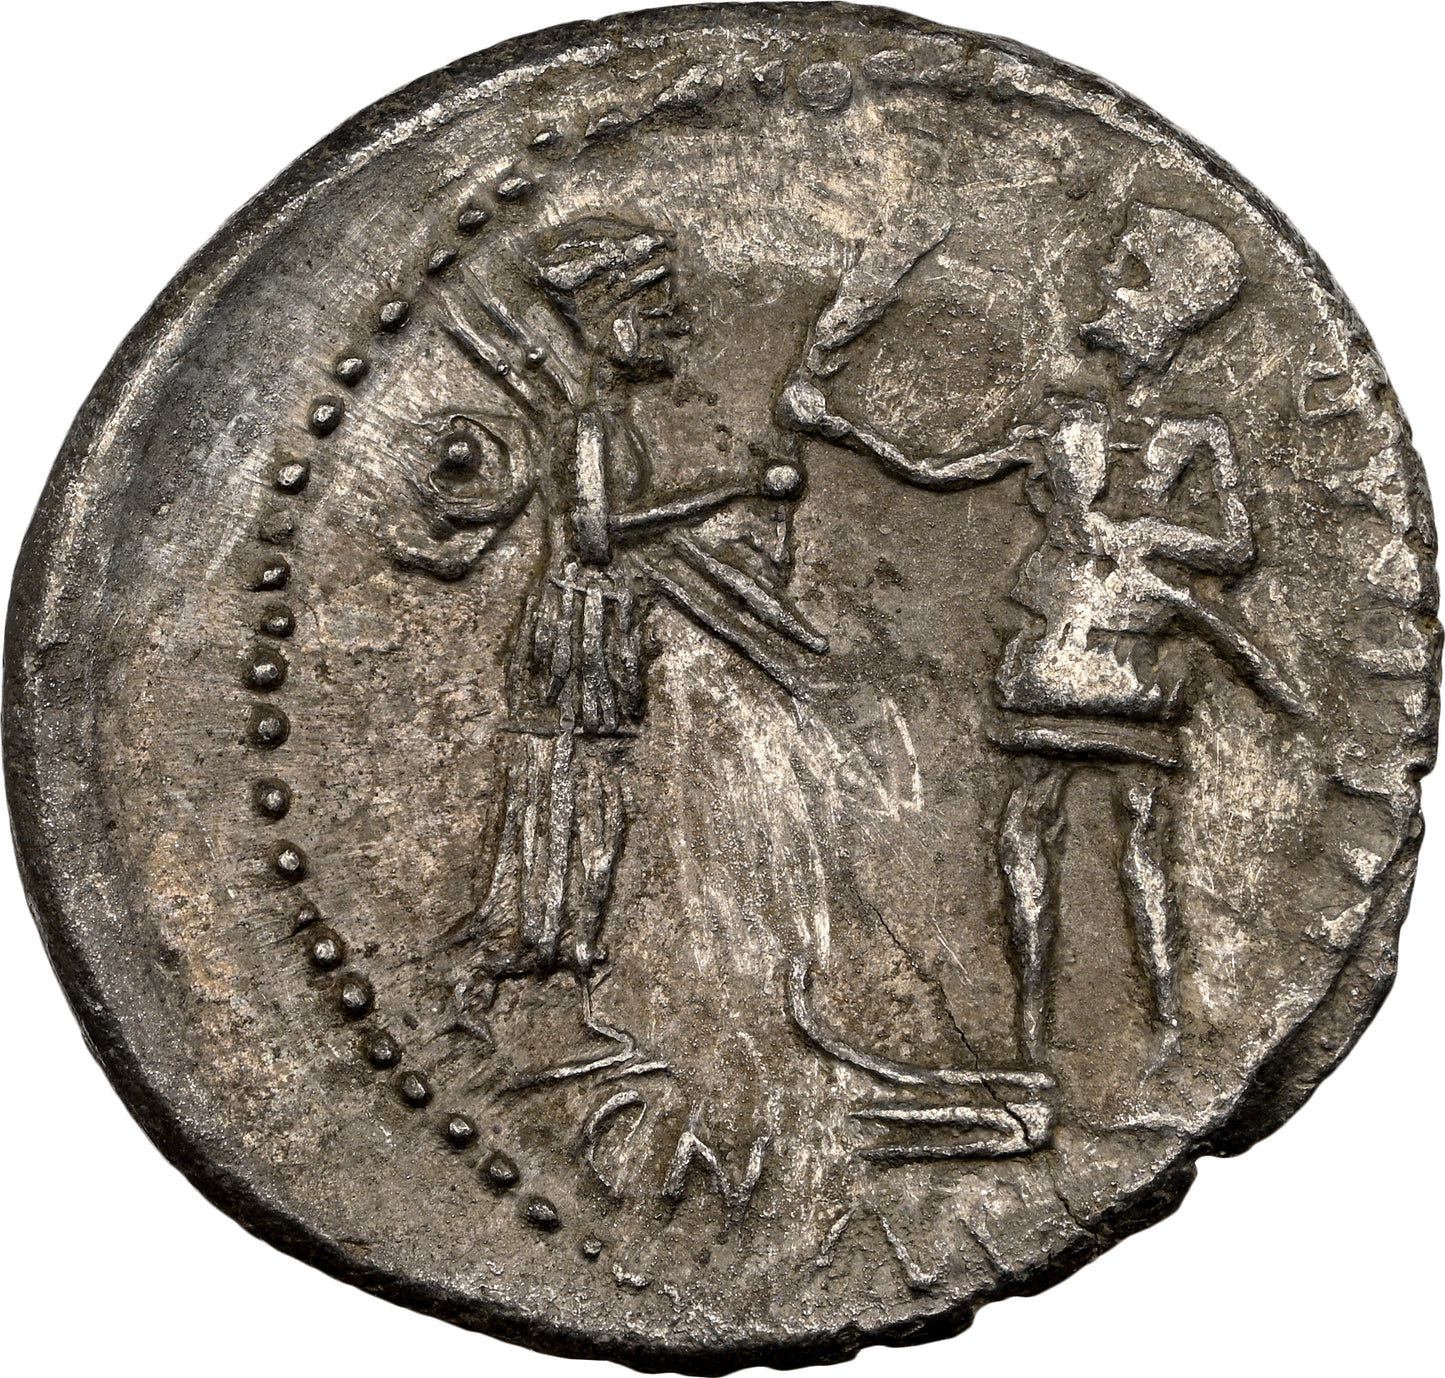 Roman Imperatorial - Pompey Junior - Silver Denarius - NGC Ch XF - Crawf. 469/1a